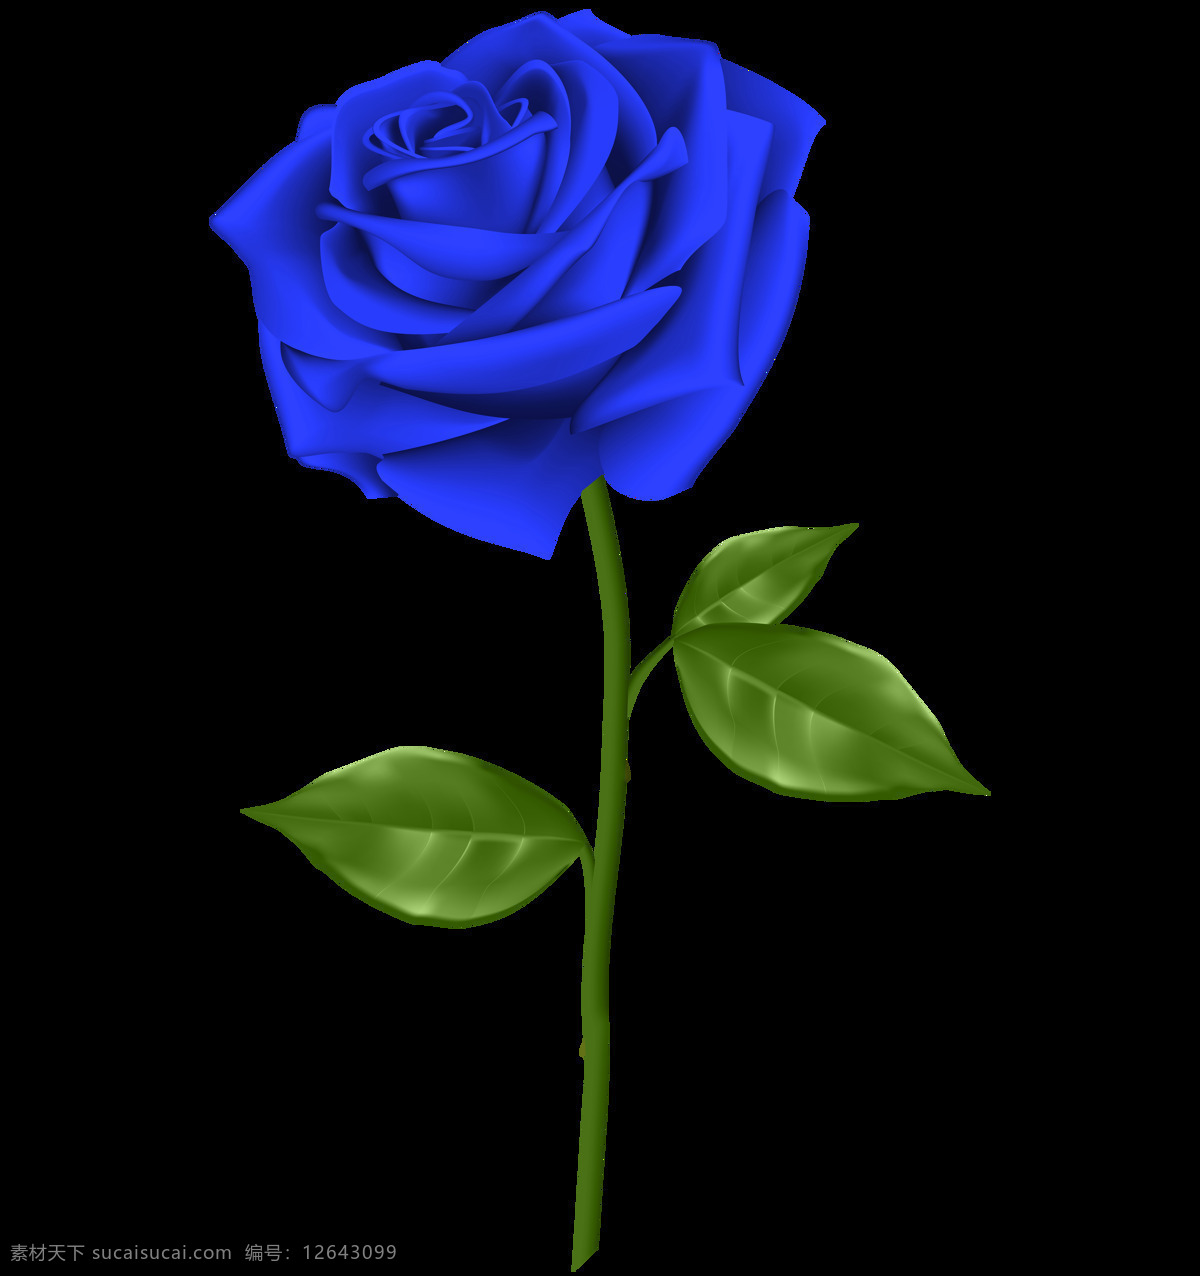 蓝色玫瑰花 玫瑰花 玫瑰 爱 自然 开花 浪漫 特写 红色玫瑰花 粉色玫瑰花 花 白色玫瑰花